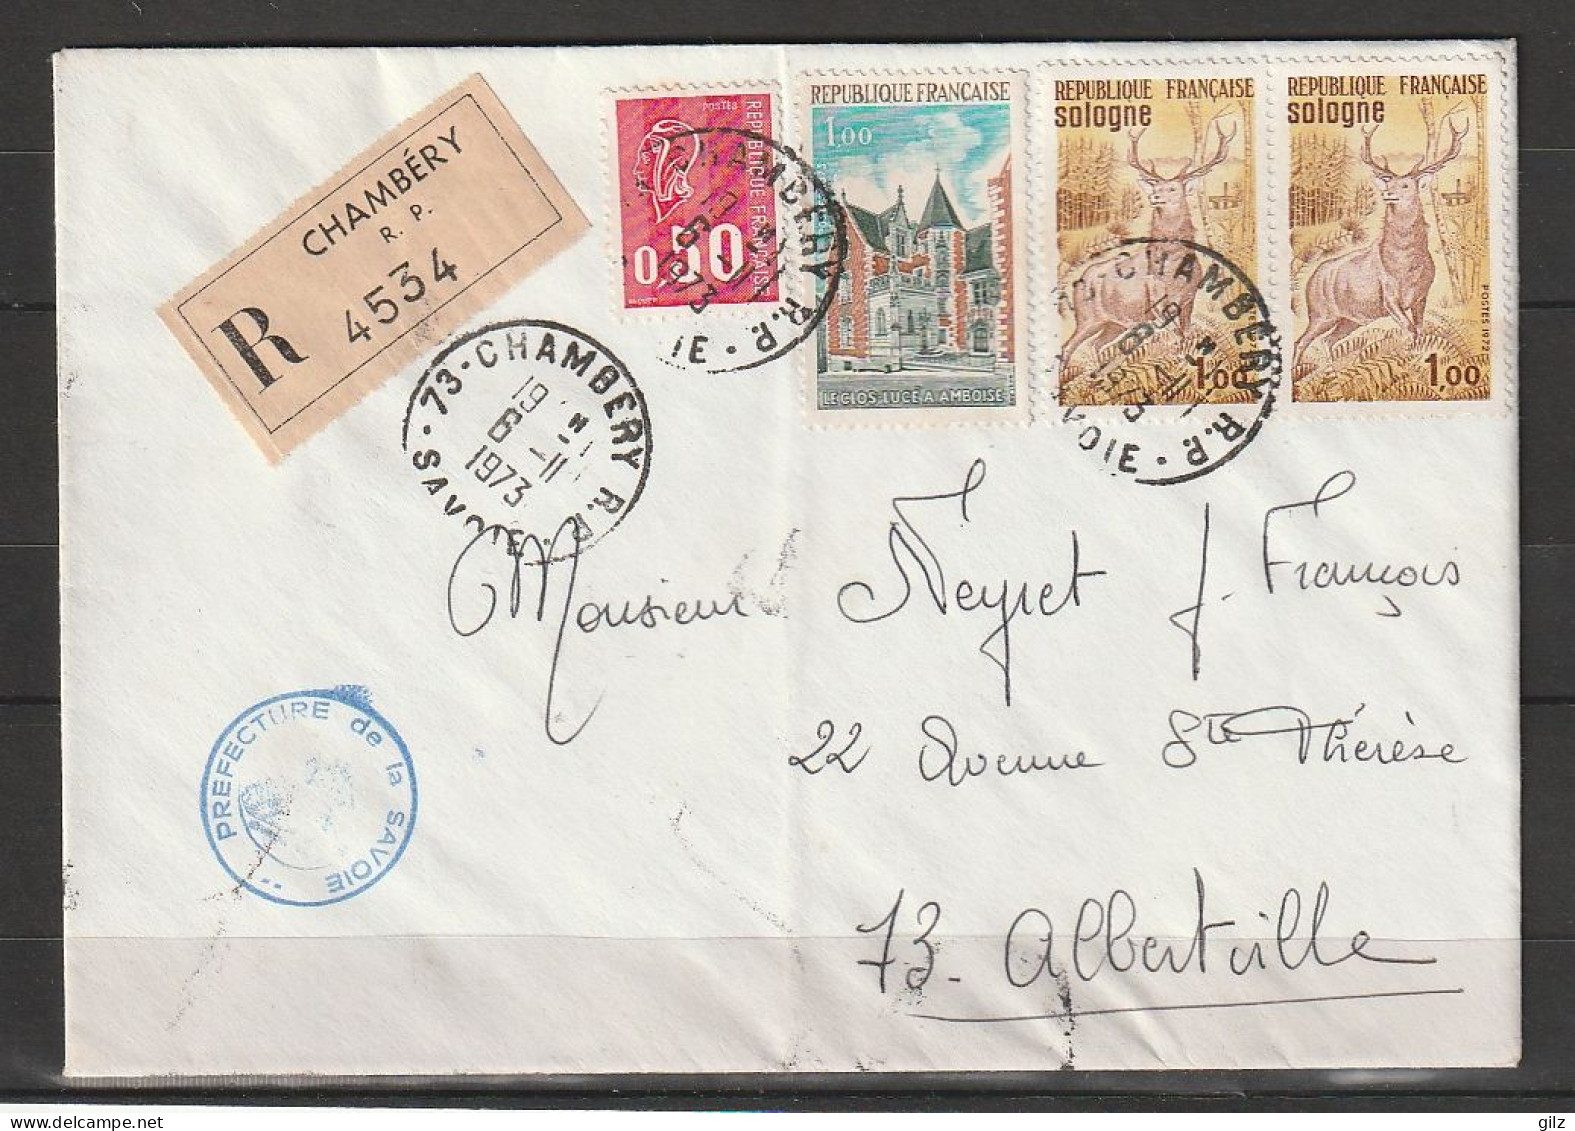 Lettre RECOMMANDEE De Chambéry Du6.11.1973 Affranchie Avec 4 Timbres - Covers & Documents